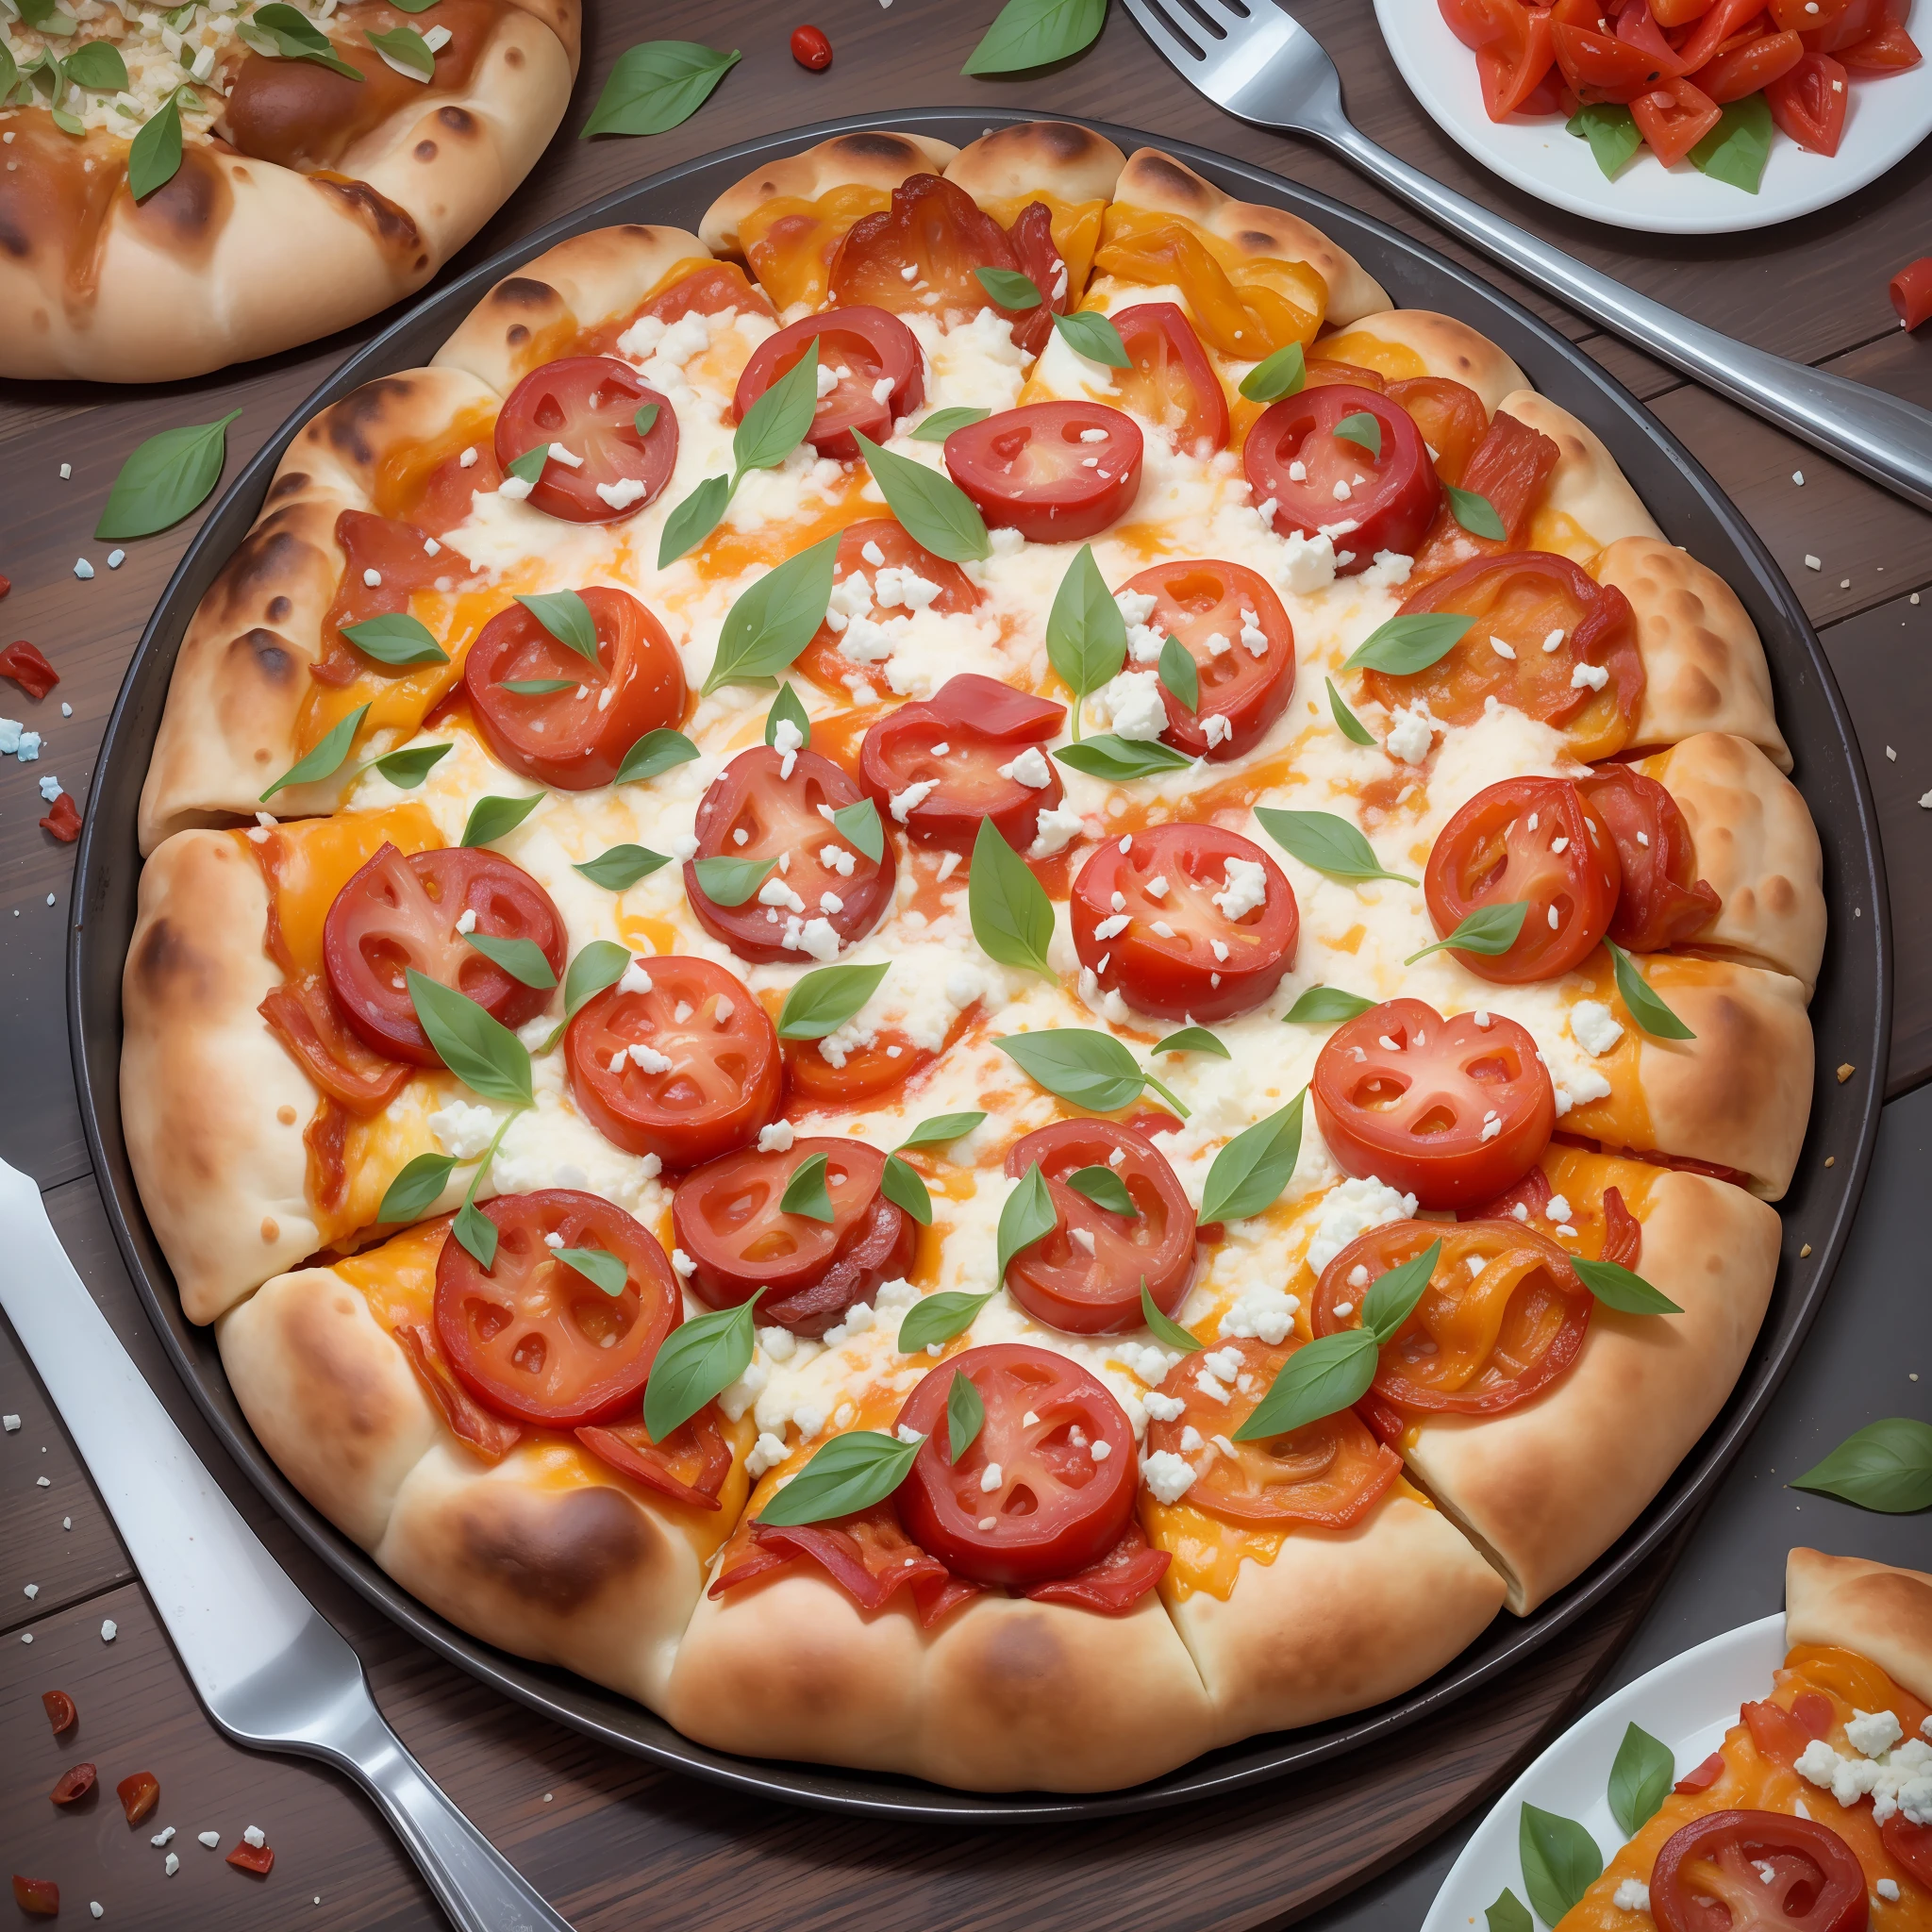 # une pizza grandiose et colorée, placé dans le contexte de l&#39;ancienne Pompéi. La pâte à pizza agit comme une toile vibrante pour un mélange de garnitures gourmandes. Premièrement, nous avons un doré, couche bouillonnante de fromage mozzarella. Suivant, il y a du rouge, tranches de tomates juteuses parsemées de notes de feuilles de basilic vert frais qui apparaissent à travers. Il y a de généreuses quantités d&#39;oignons caramélisés, champignons, et poivrons dans des tons de rouge, jaune, et vert.Poursuivant le défilé des saveurs sont les salés, morceaux de jambon tranchés finement, Pepperoni, et bacon croustillant, suivi d&#39;une pincée de crumble de fromage bleu, Origan frais, et des flocons de piment rouge pour un piquant supplémentaire. sur le côté, il y a des tranches d&#39;olives noires et des coeurs d&#39;artichauts marinés.　L&#39;ensemble du spectacle repose sur une croûte parfaitement cuite, légèrement carbonisé sur les bords. Le chaud, la lueur invitante du four à bois illumine la scène. En arrière-plan, les ruines de Pompéi restent silencieuses, Mont. Le Vésuve occupe une place importante, avec un ciel doucement éclairé par le soleil couchant.